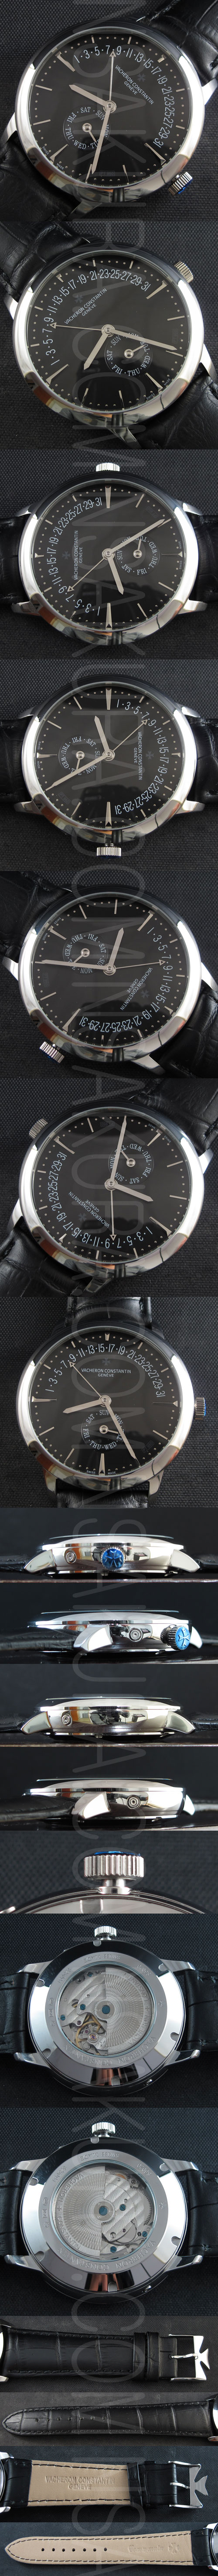 ヴァシュロンコンスタンタン腕時計の説明